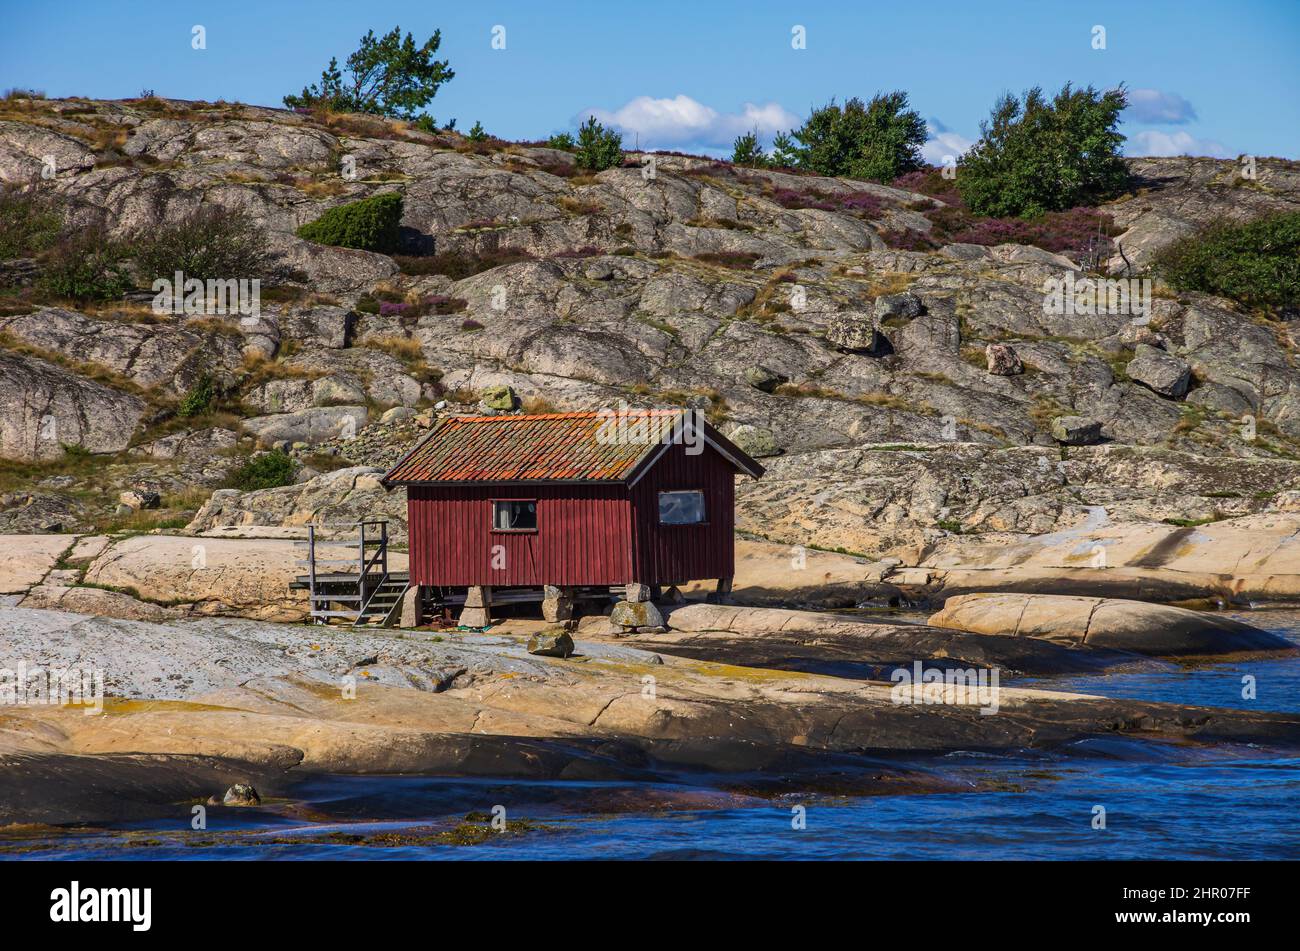 Small wooden coastal hut on a skerry off Strömstad, Bohuslän, Västra Götalands län, Sweden. Stock Photo